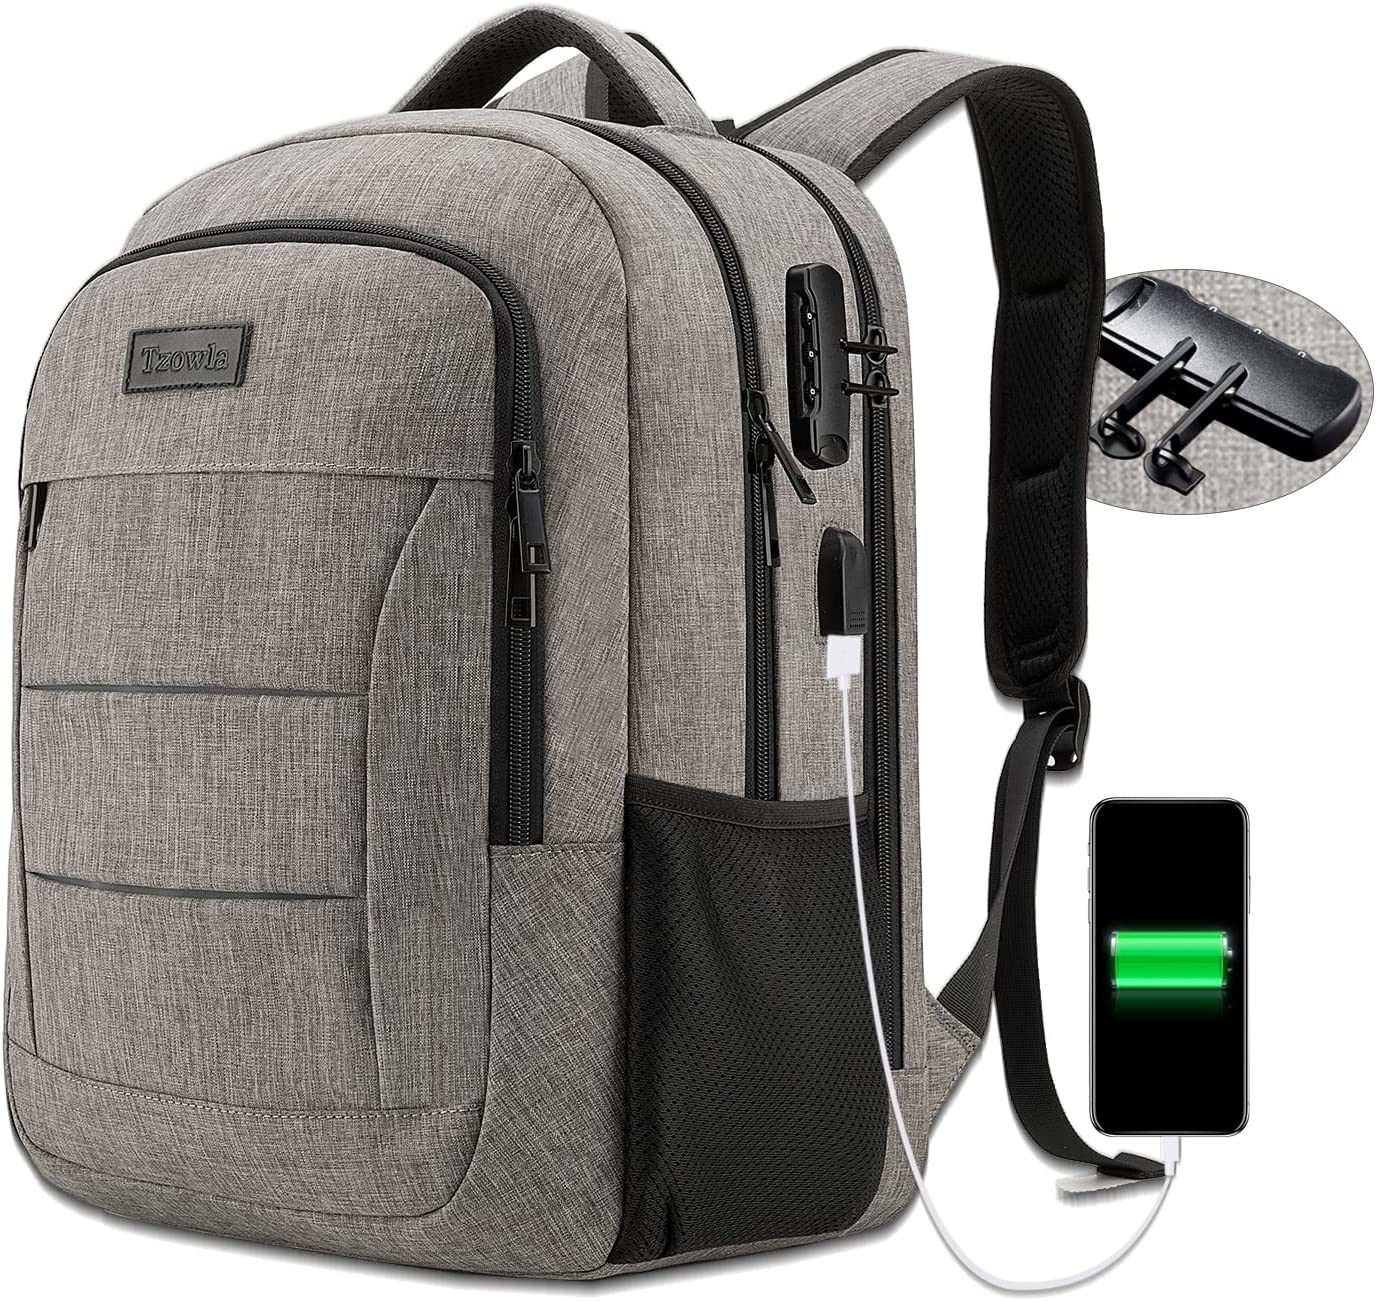 کوله پشتی با محفظه لپ تاپ Tzowla مدل laptop backpack - ارسال ۱۰ الی ۱۵ روز کاری